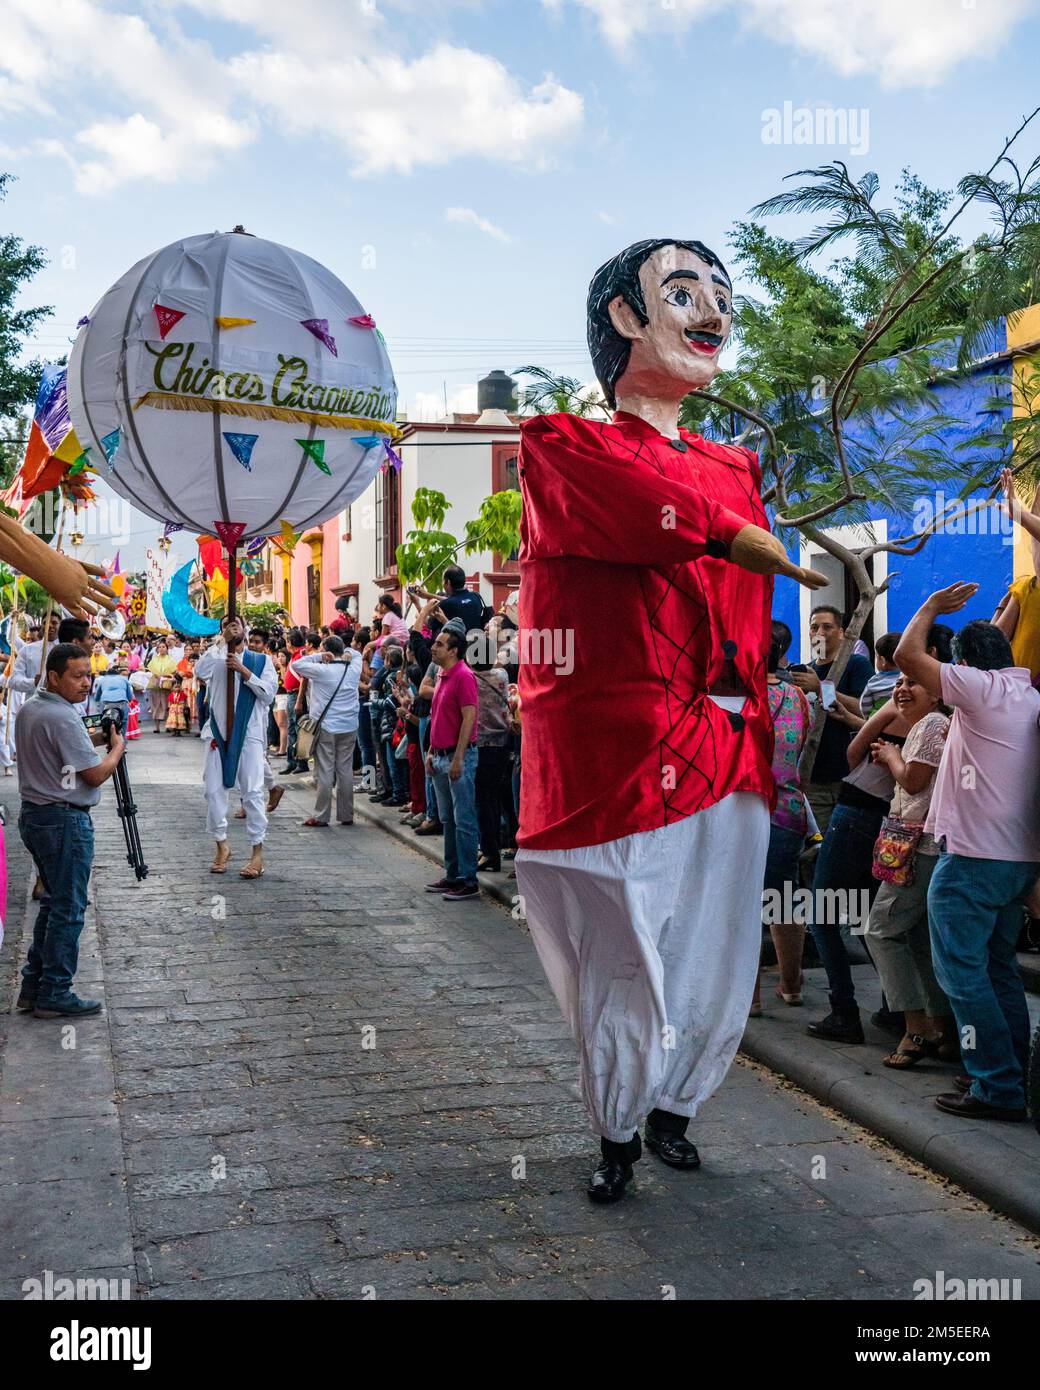 A giant puppet called mono de calenda or parade monkey in a parade during the Guelaguetza dance festival in Oaxaca, Mexico. Stock Photo